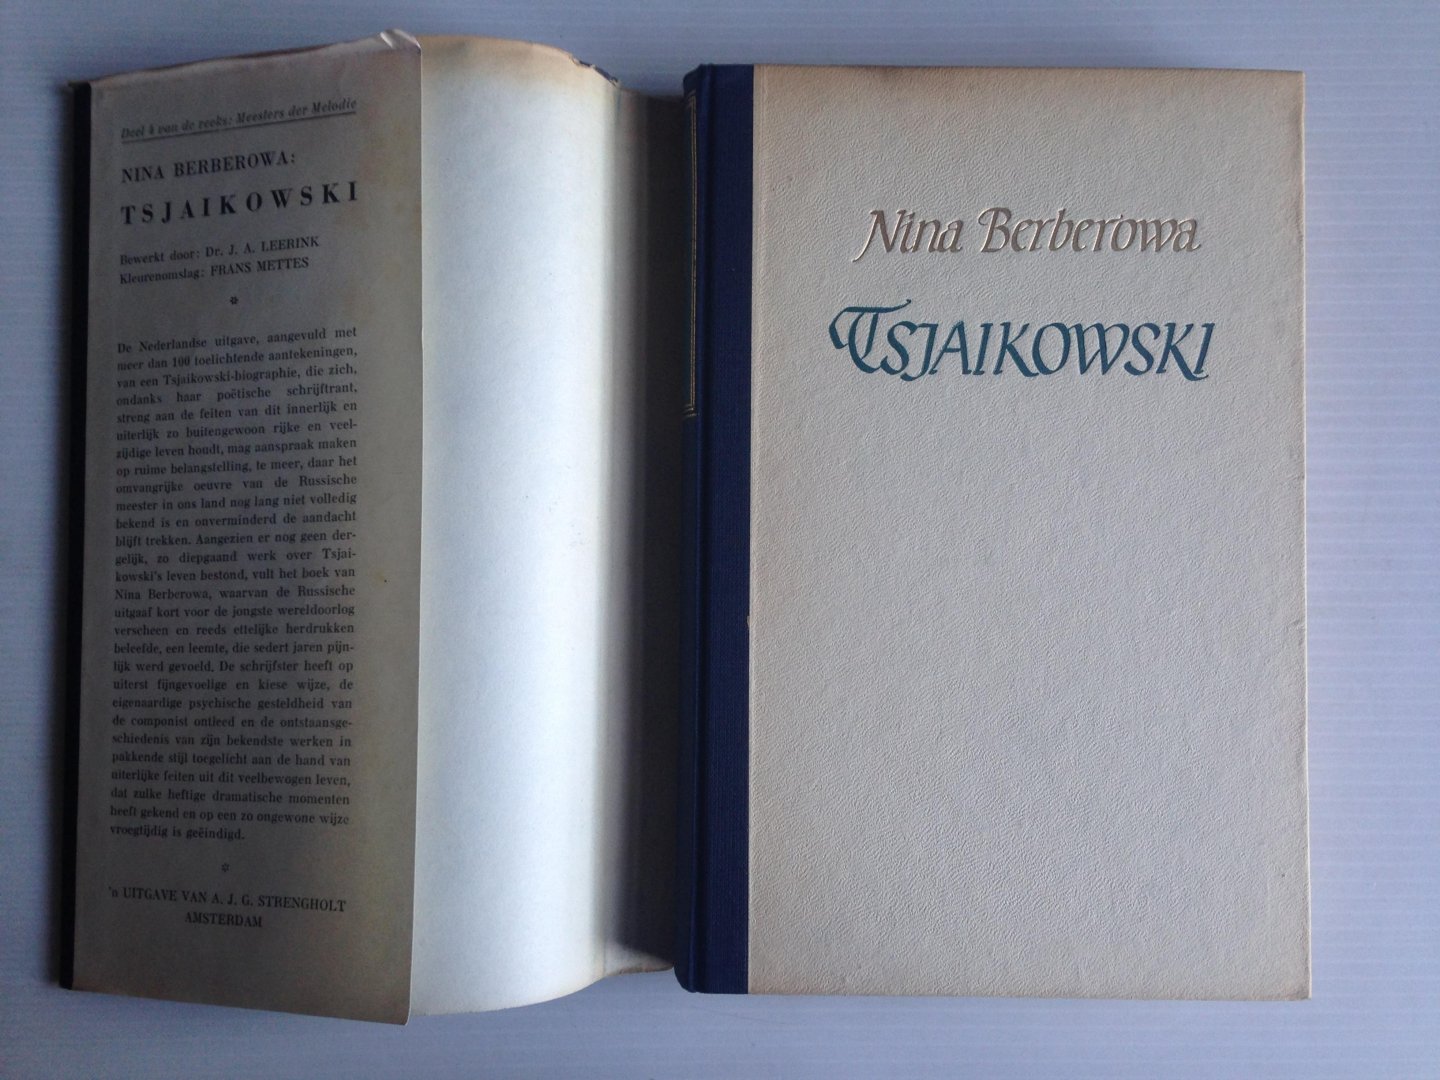 Berberowa, Nina - Tsjaikowski, De geschiedenis van een eenzaam leven